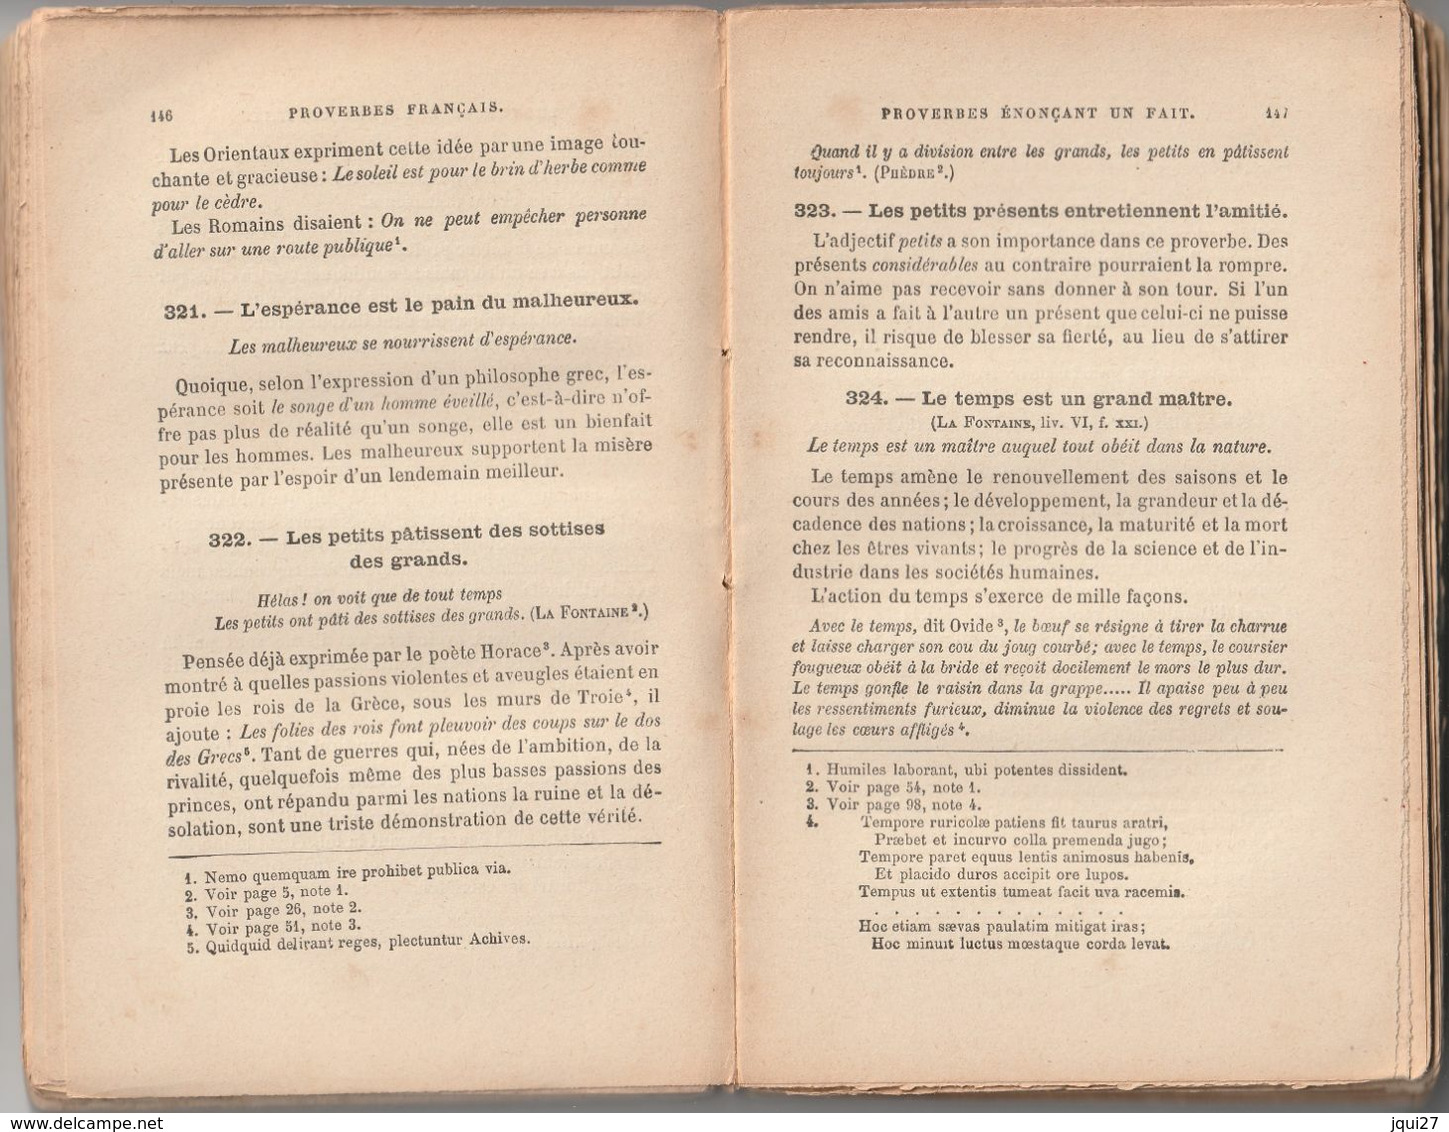 Petit Recueil Des Proverbes Français, L. Martel - Wörterbücher